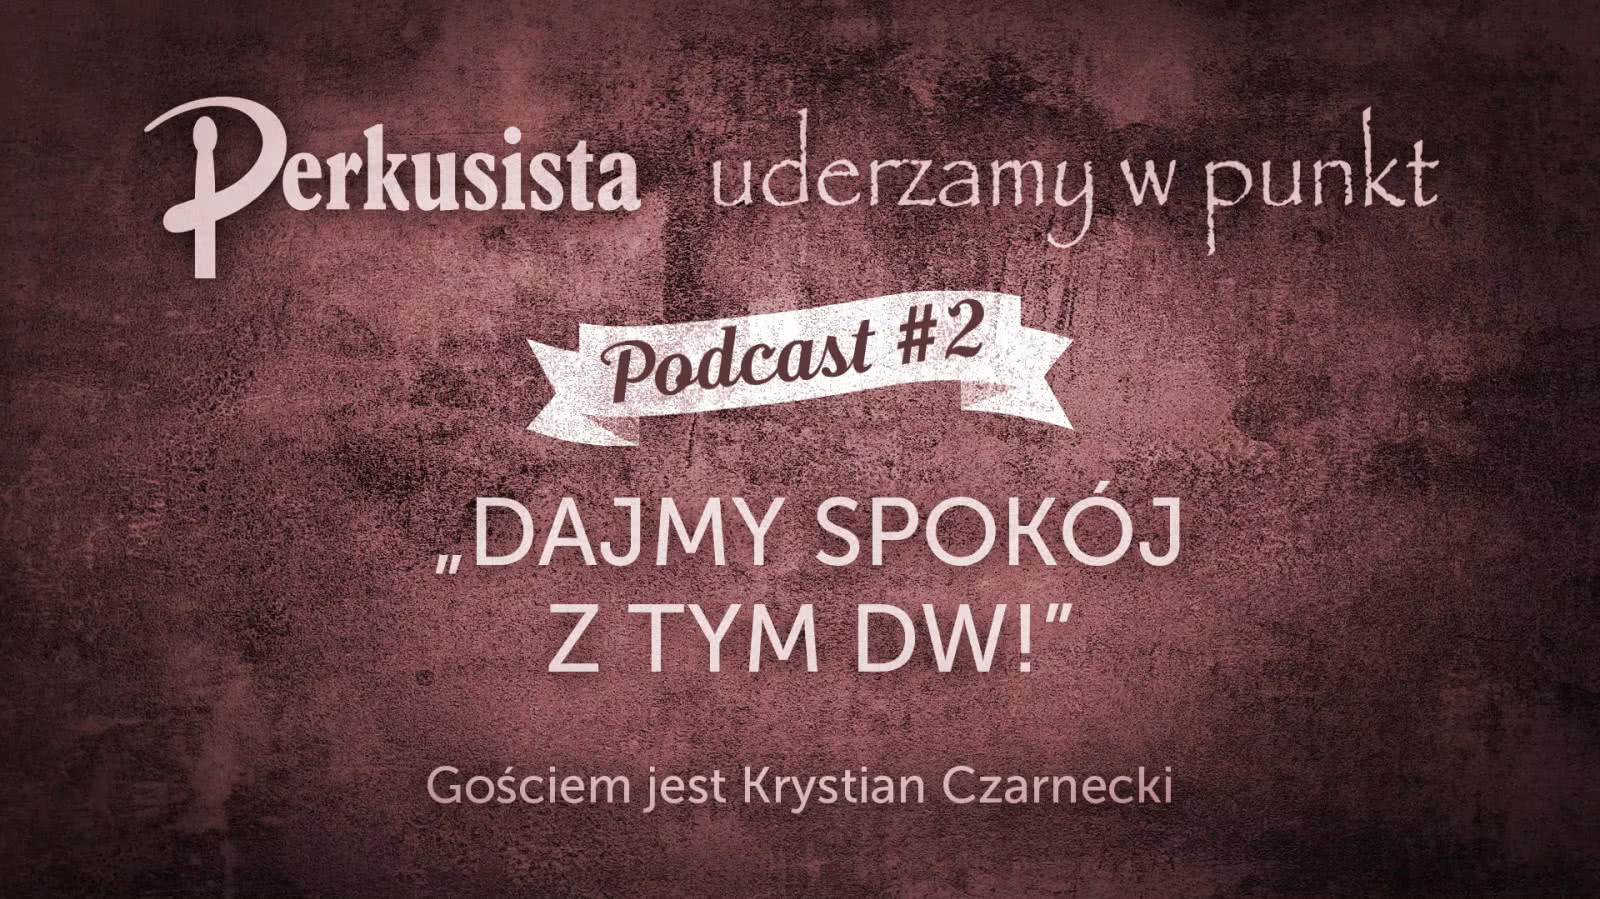 Drum Podcast #2 - Dajmy spokój z tym DW!/Krystian Czarnecki 